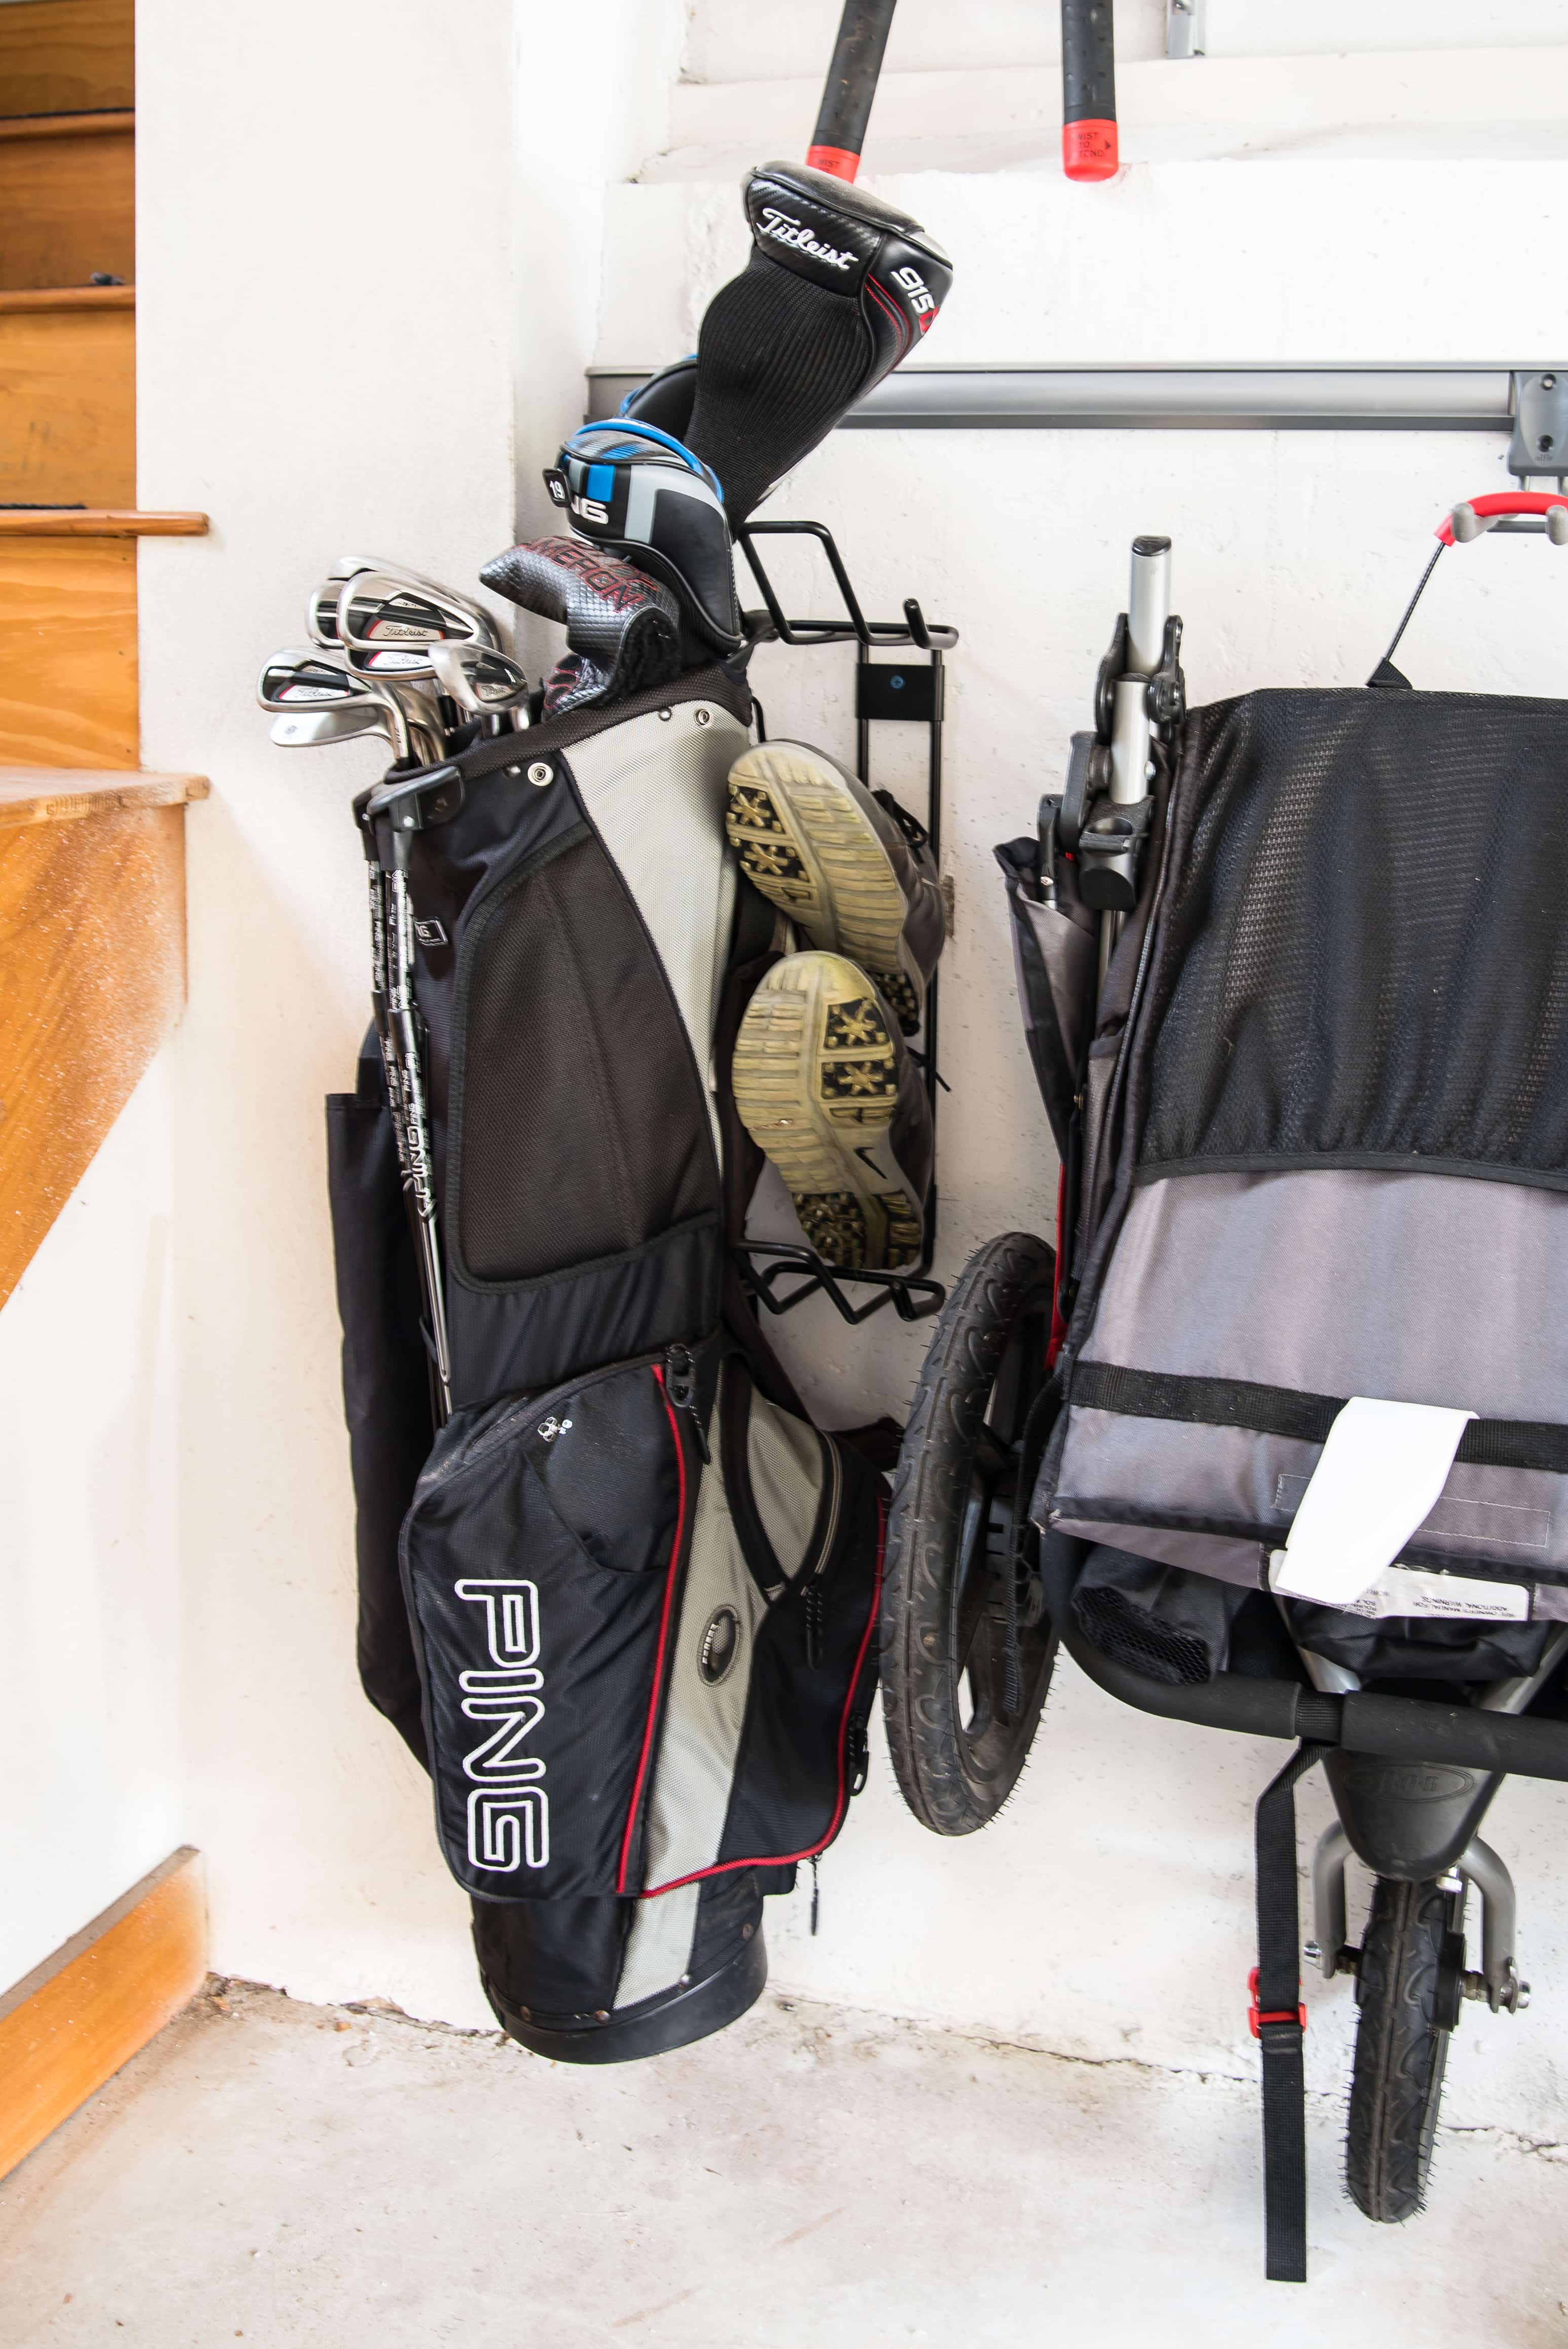 Golf bag hung up on garage track system